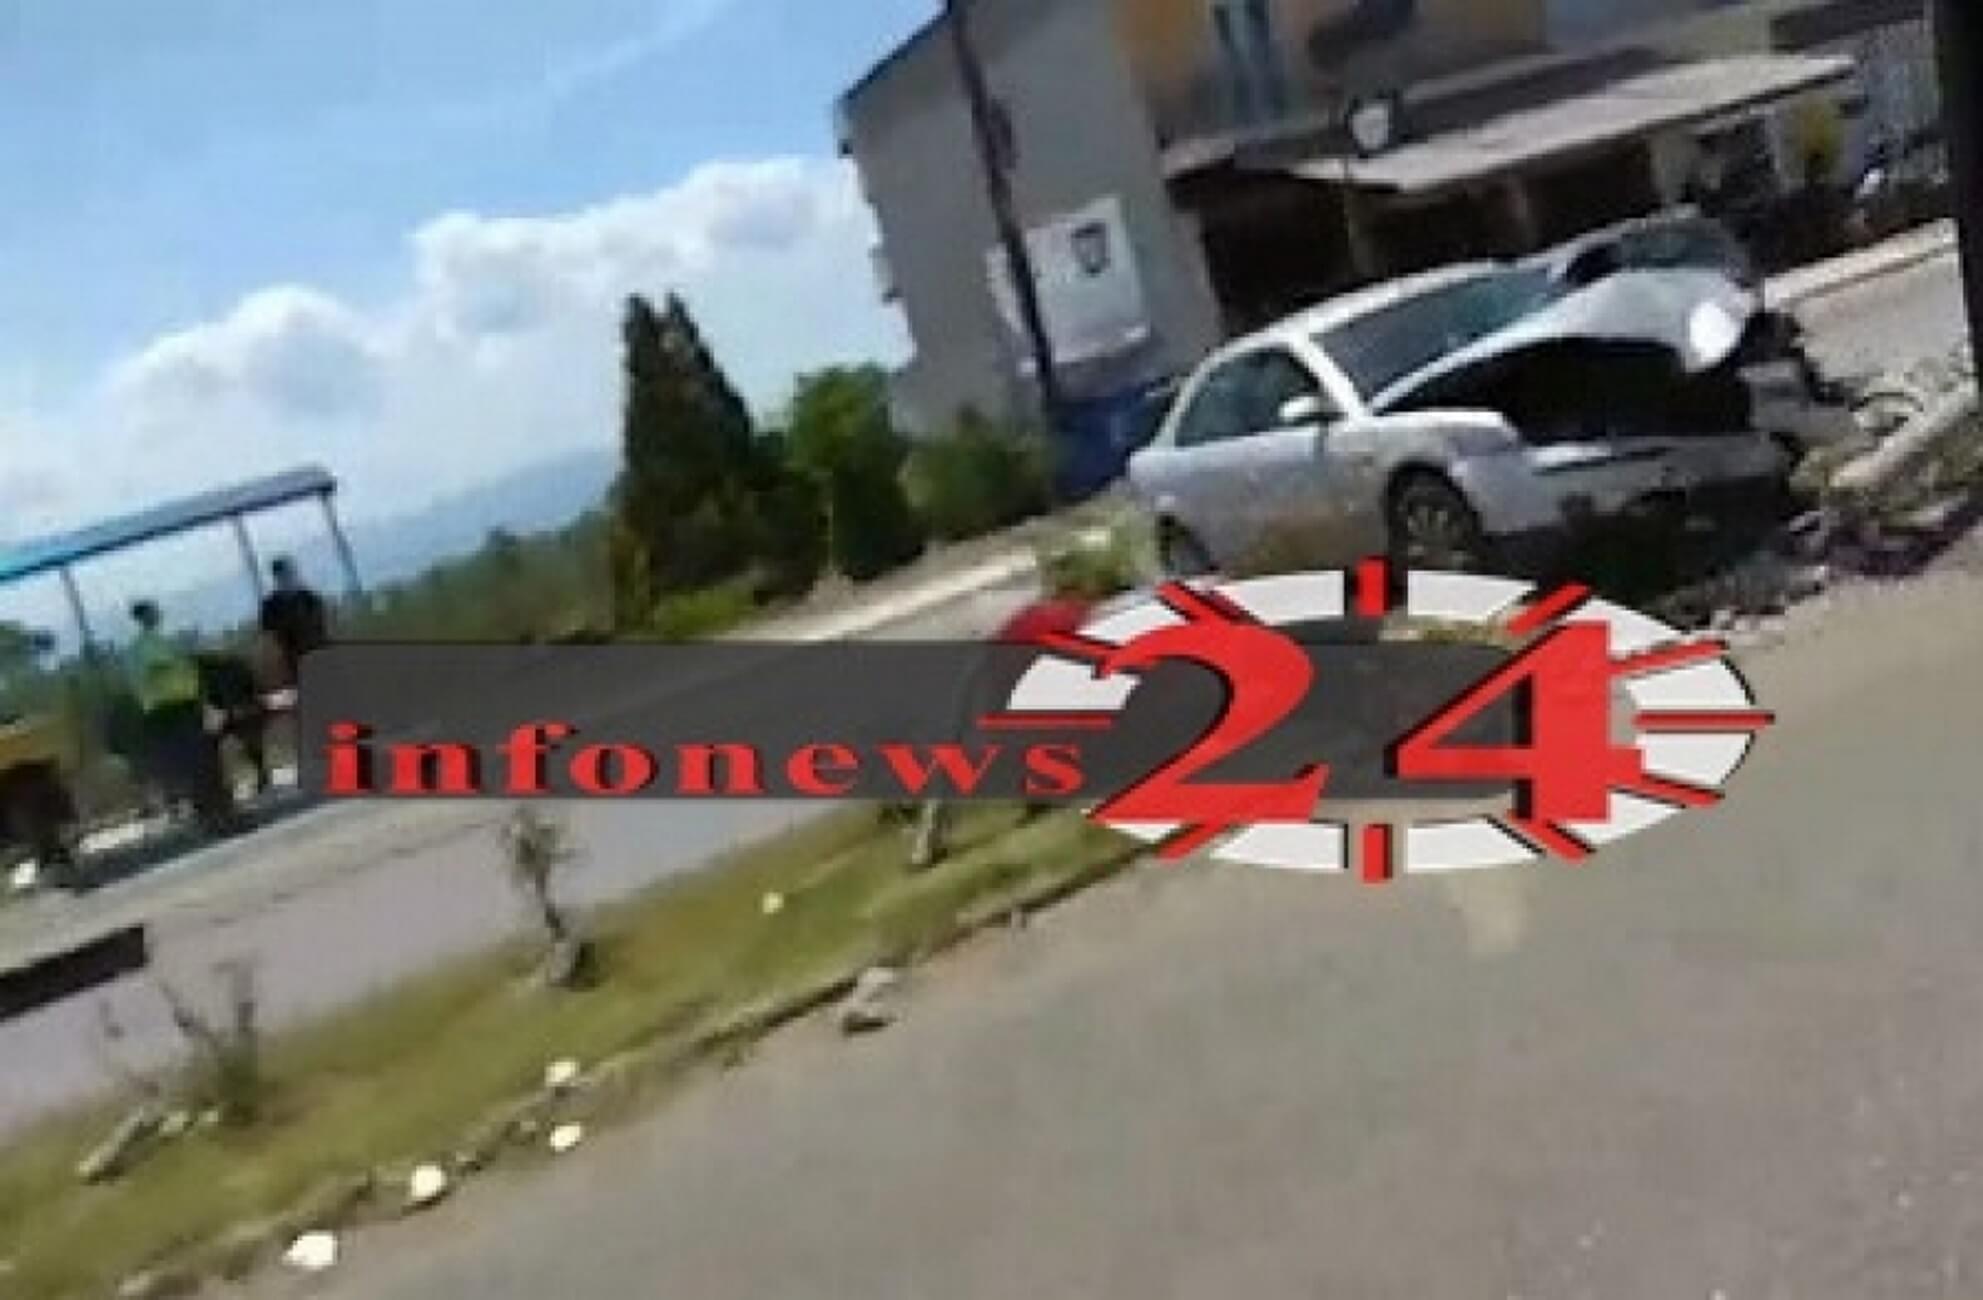 Σέρρες: Διαλύθηκε το αυτοκίνητο που καρφώθηκε σε κολώνα – Αυτοψία στο σημείο [pic, video]